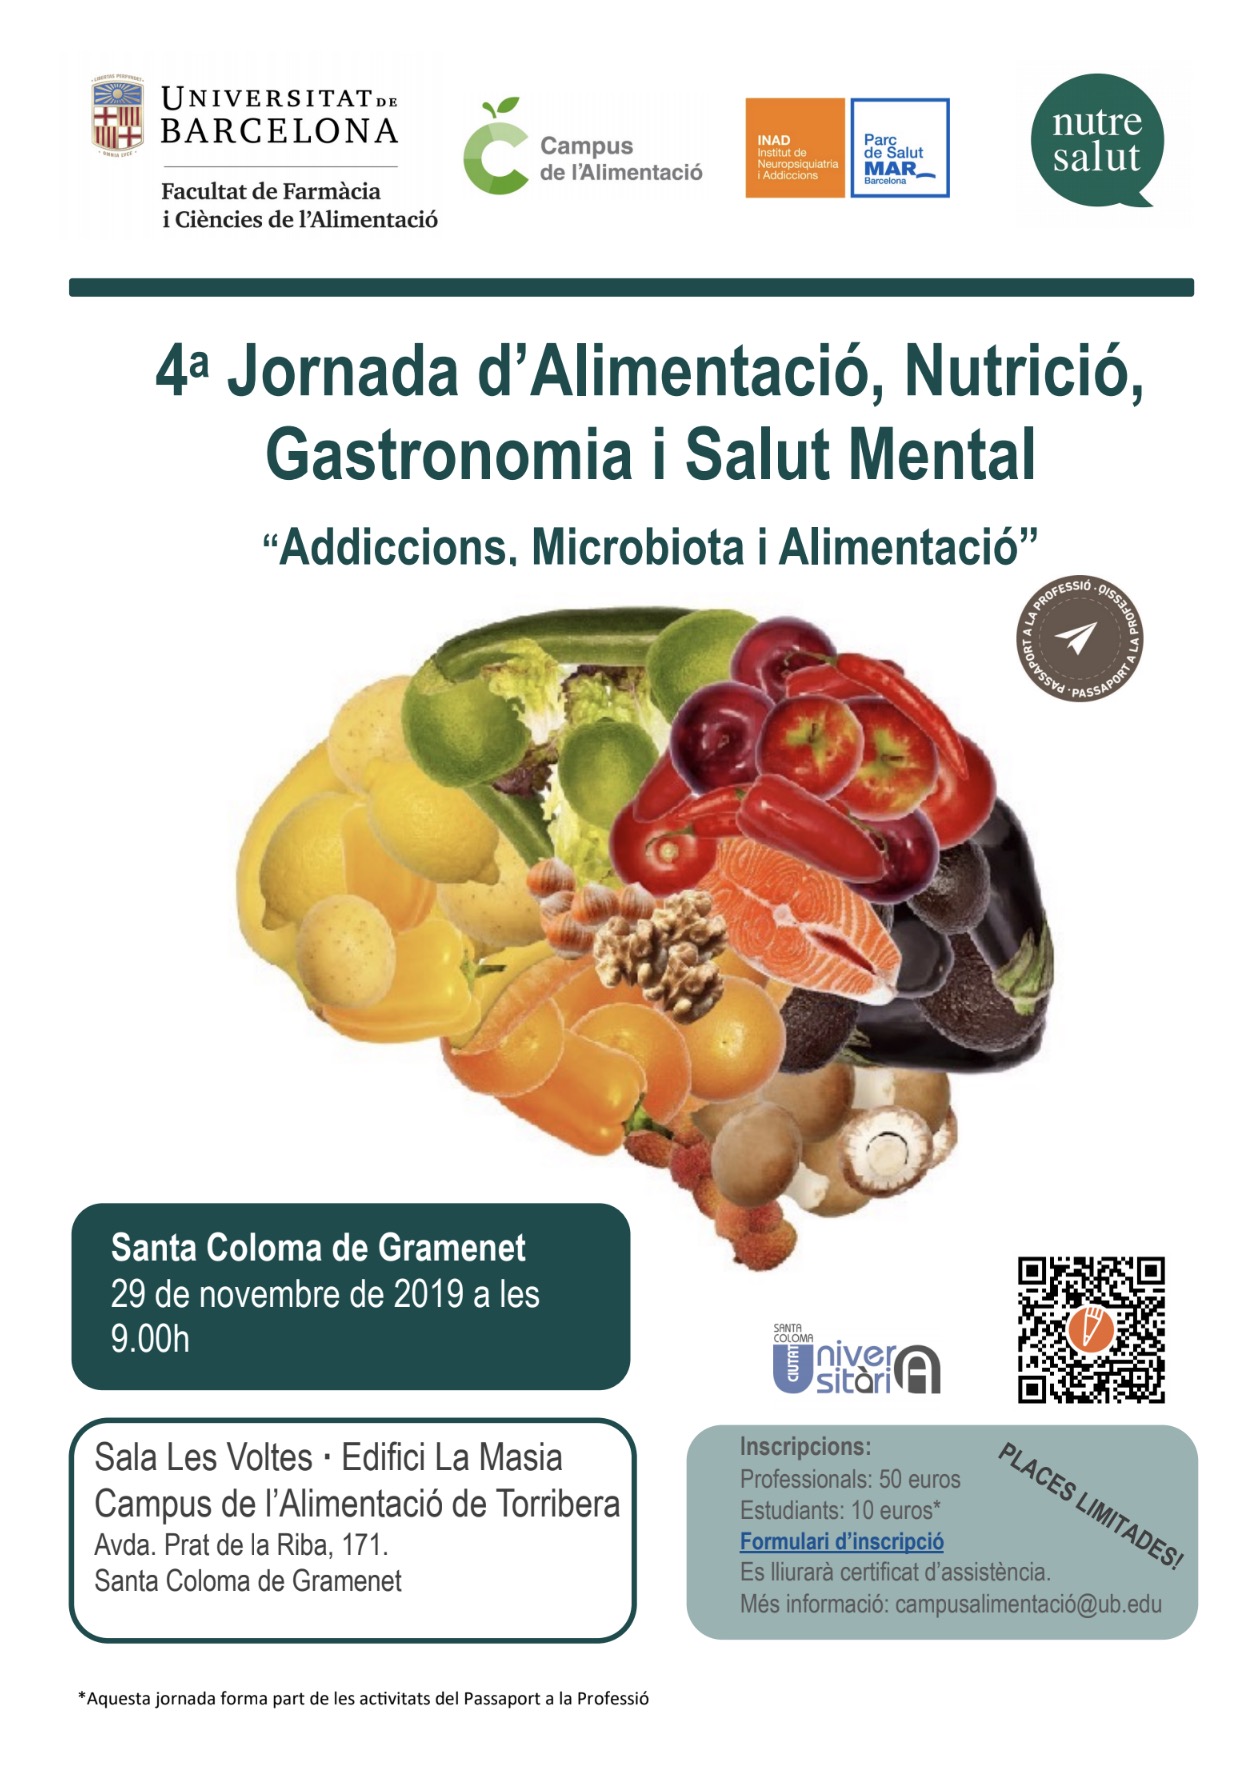 IV Jornada d’Alimentació, Nutrició, Gastronomia i Salut Mental, 29 de novembre (Campus de l’Alimentació de Torribera, Santa Coloma de Gramenet)